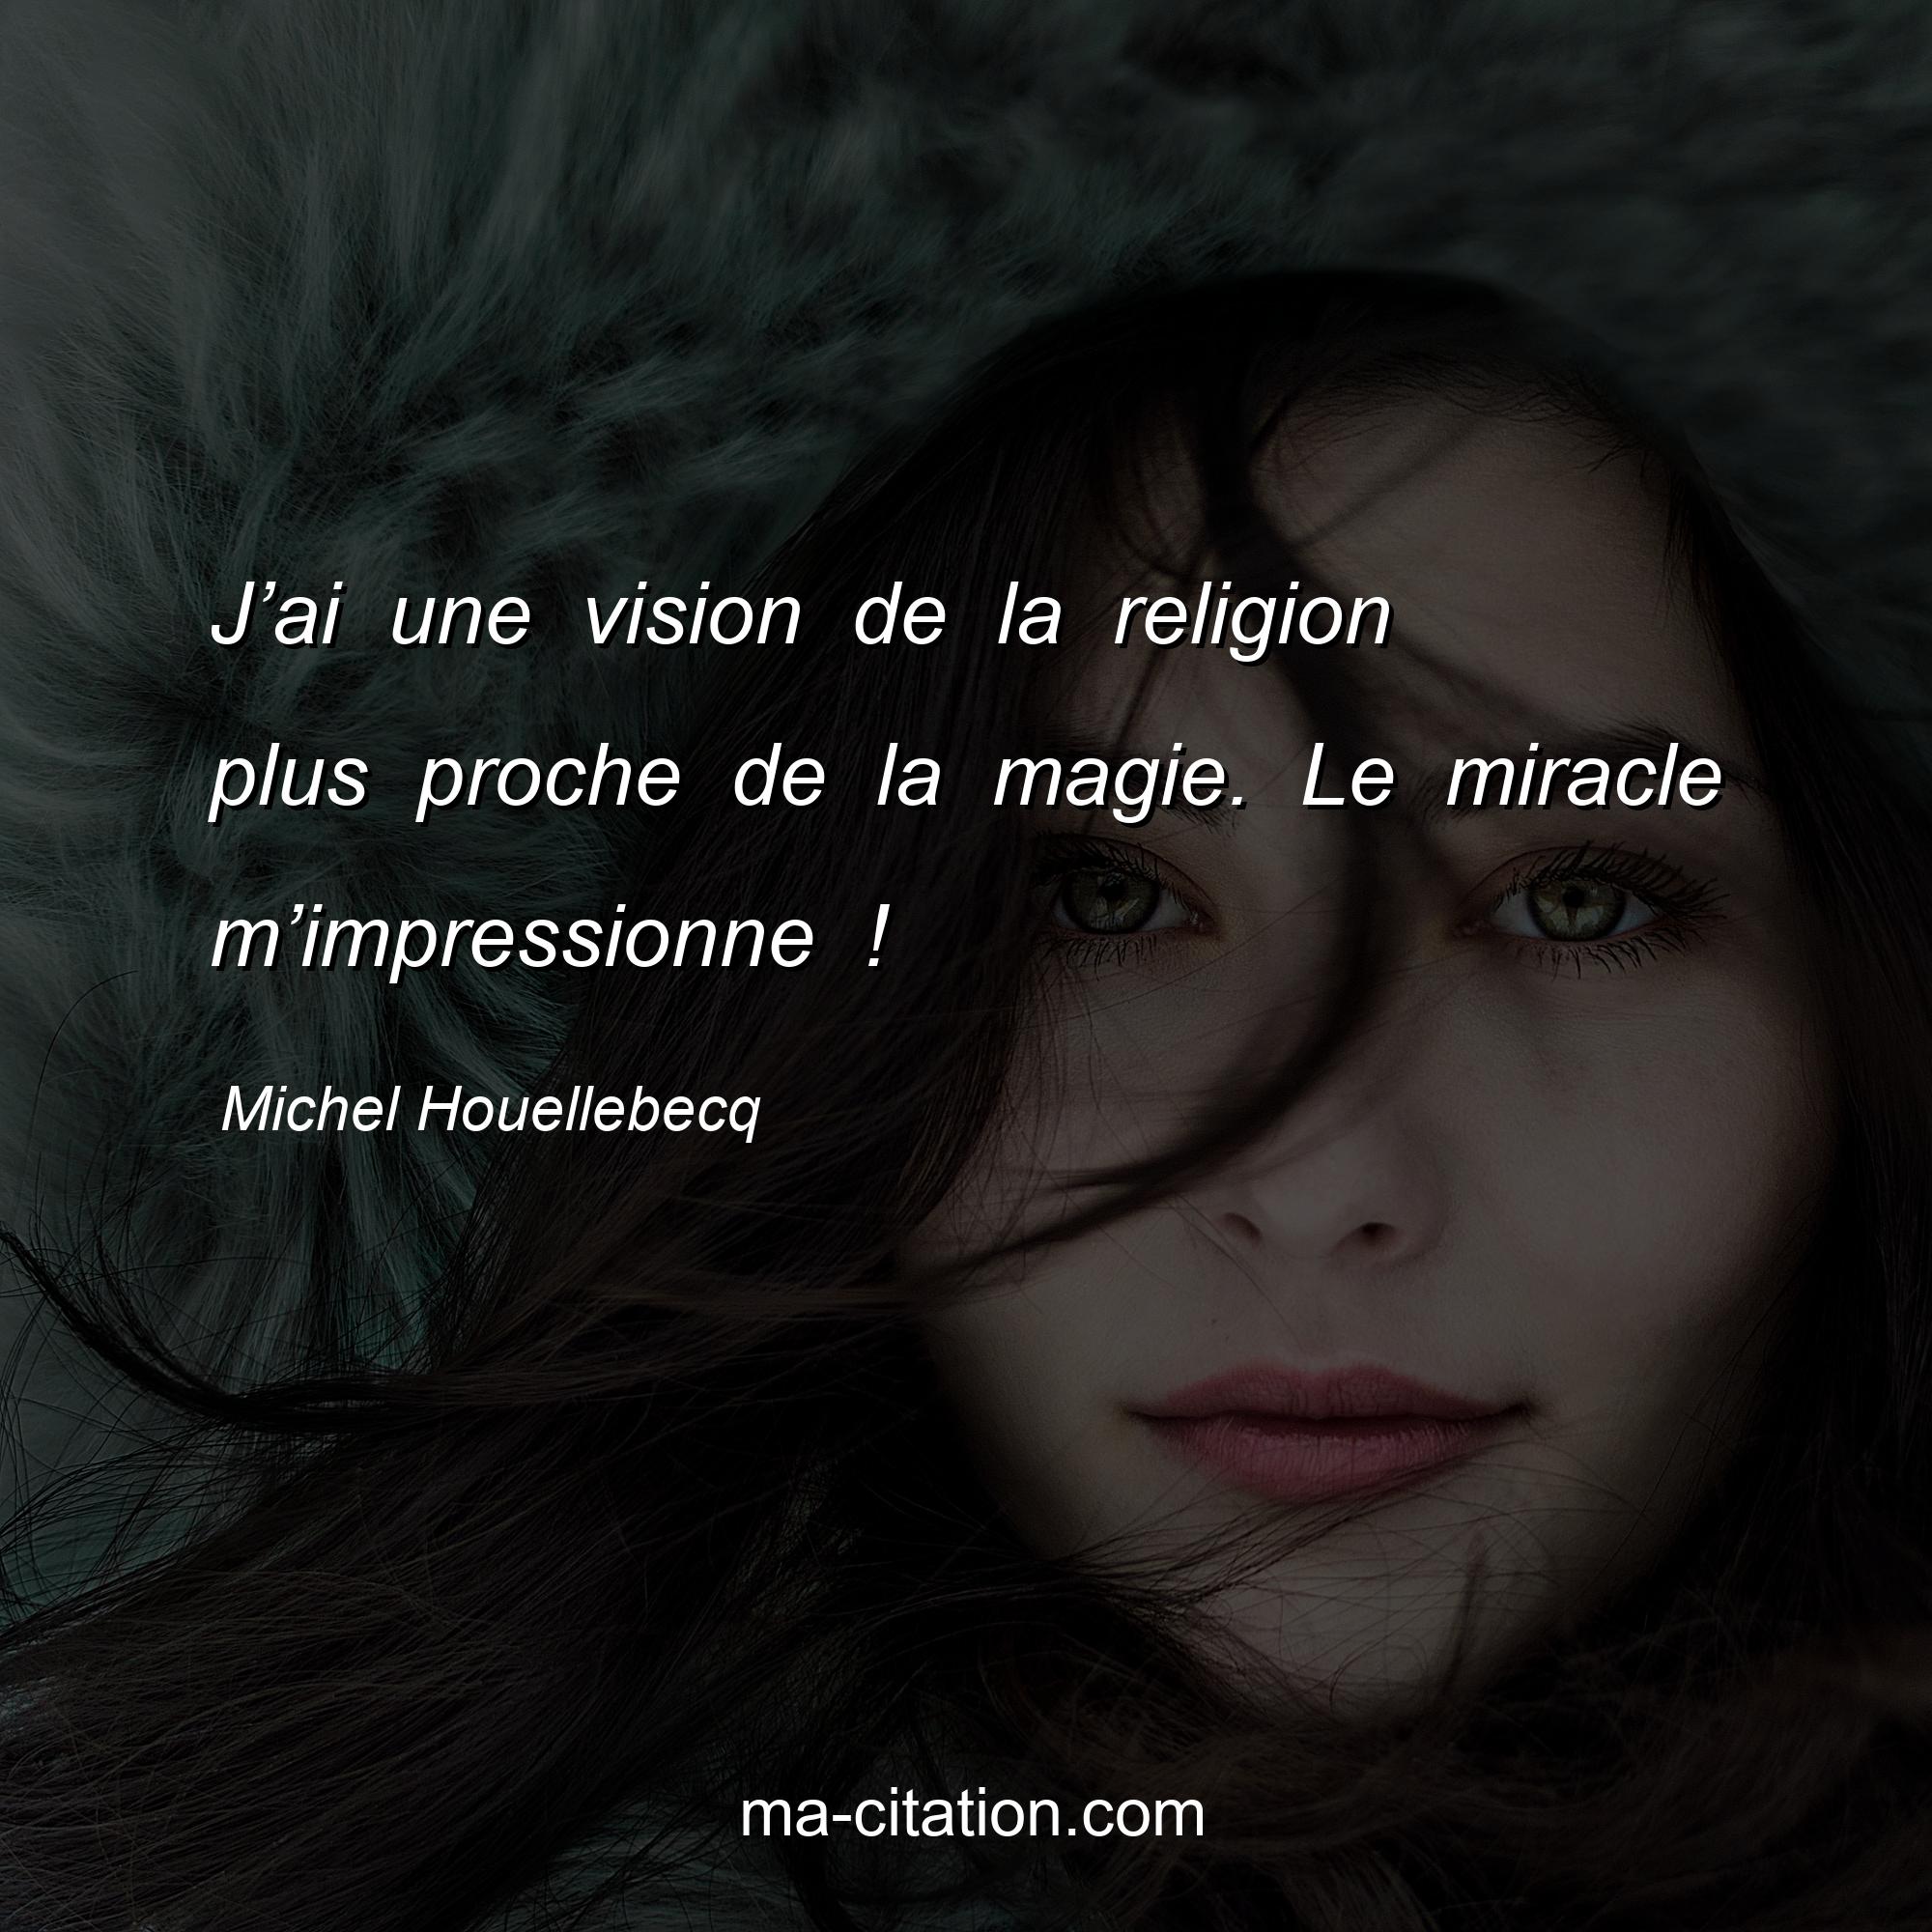 Michel Houellebecq : J’ai une vision de la religion plus proche de la magie. Le miracle m’impressionne !